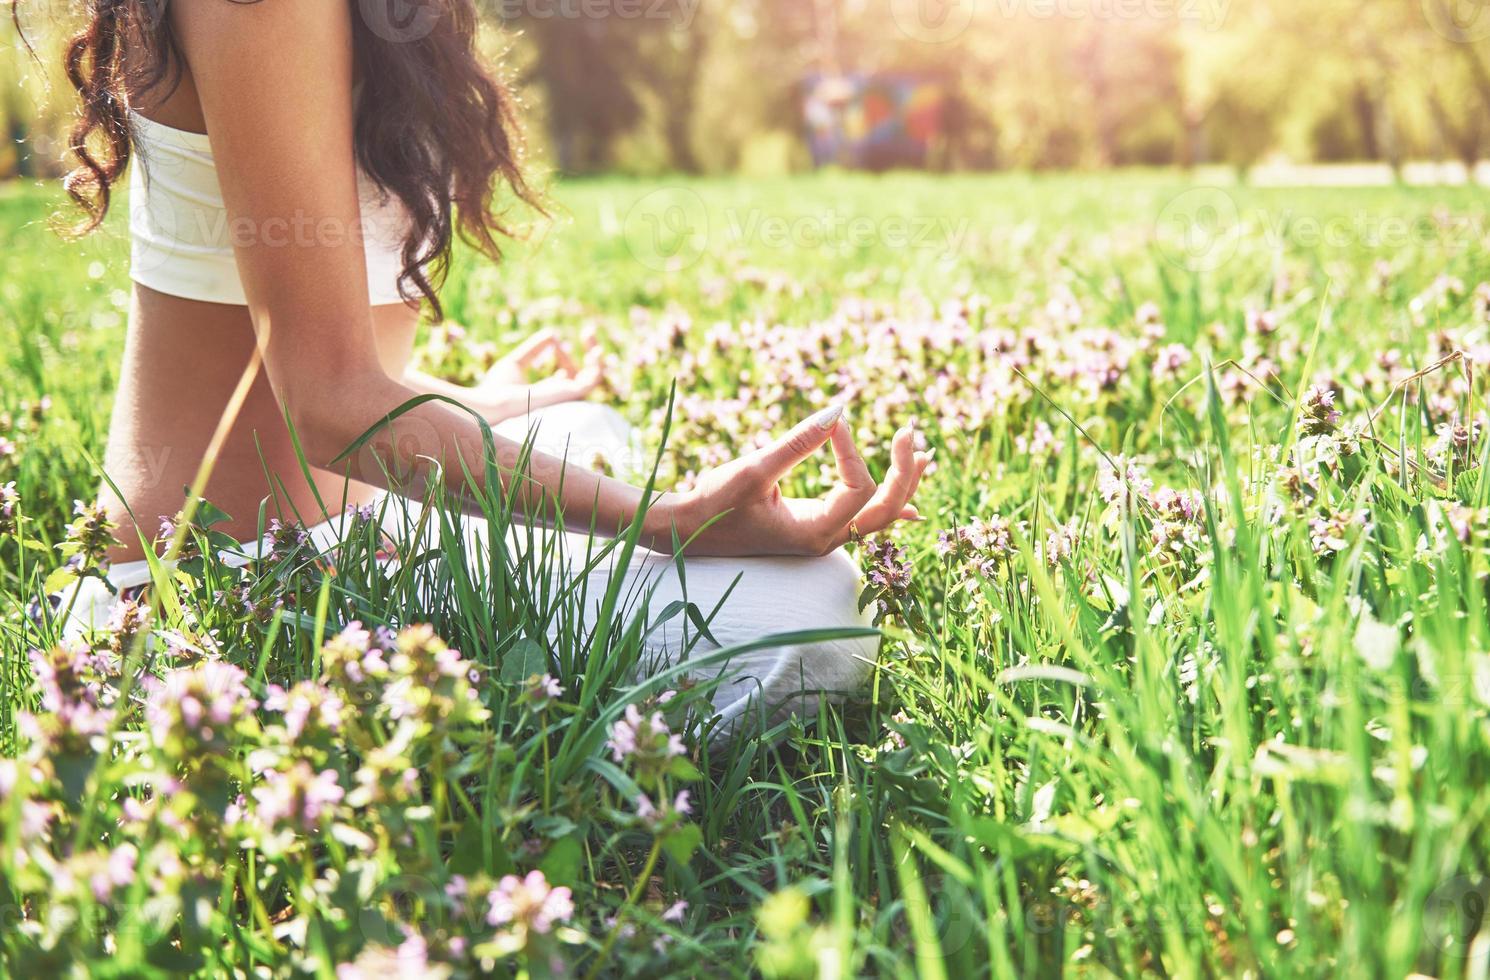 La meditación del yoga en un parque sobre el césped es una mujer sana en reposo foto